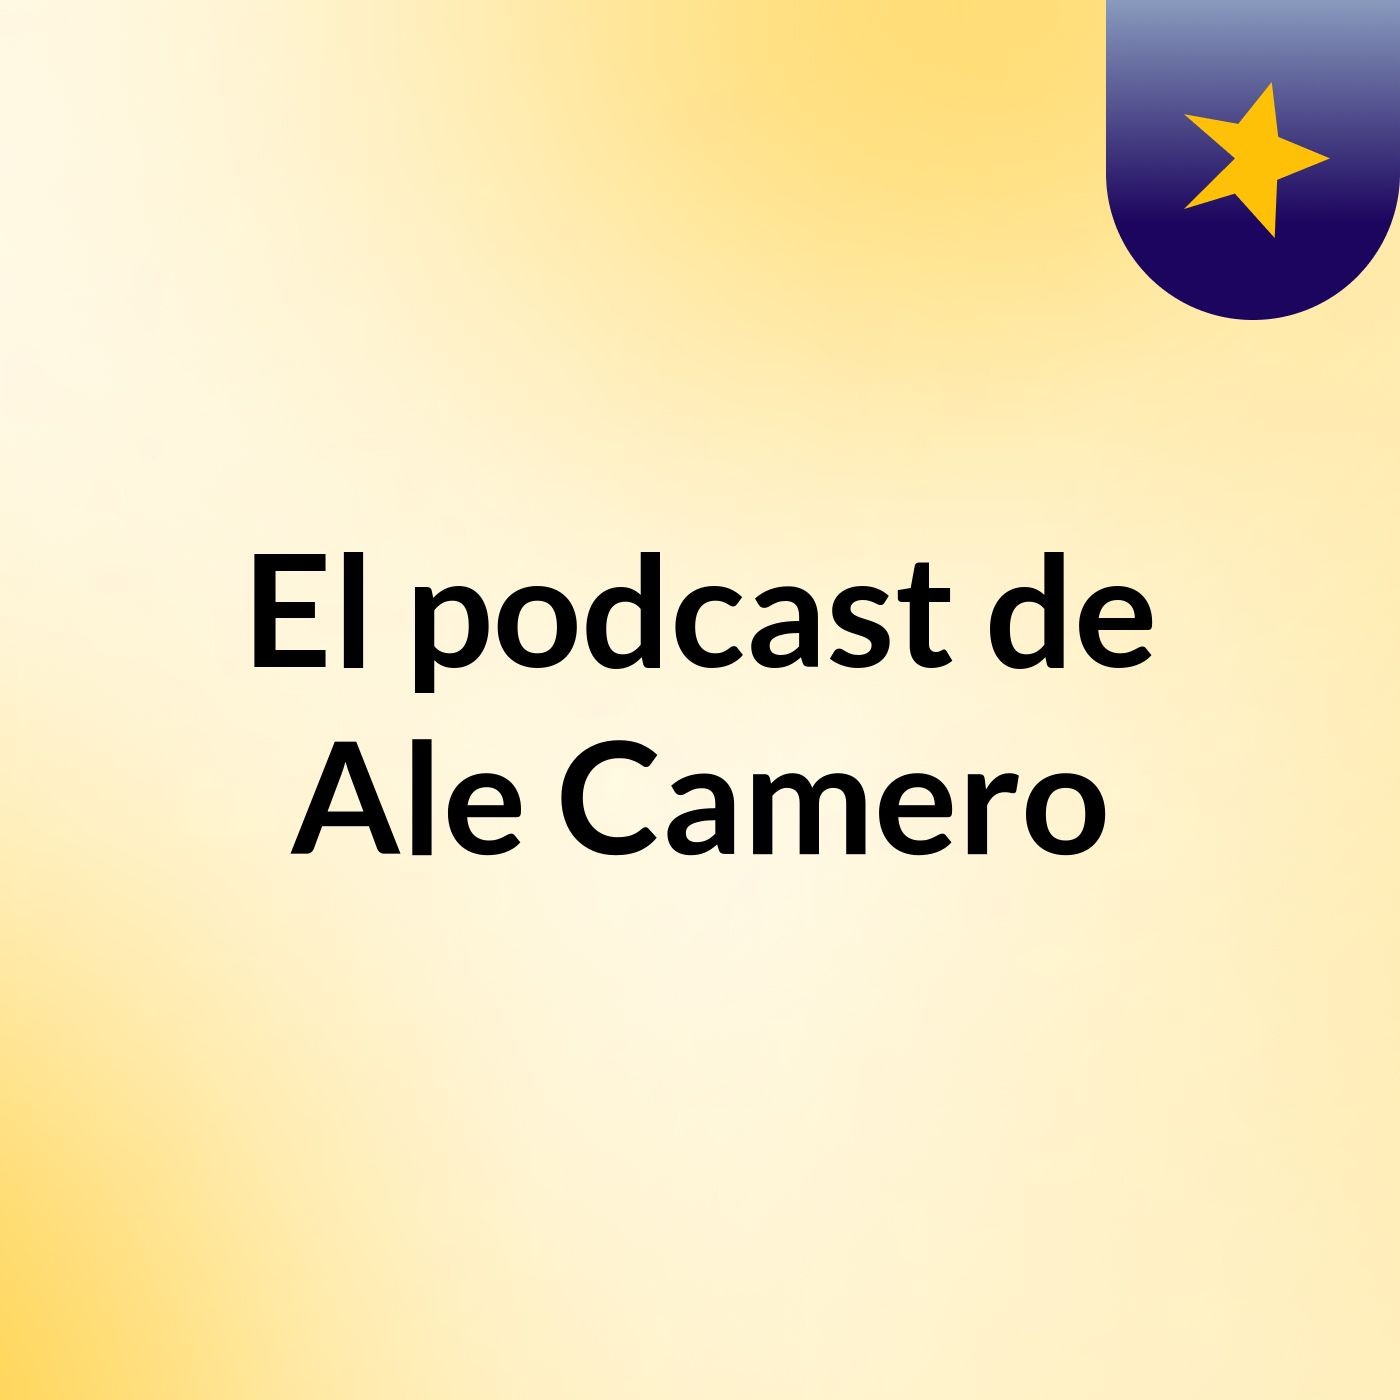 El podcast de Ale Camero